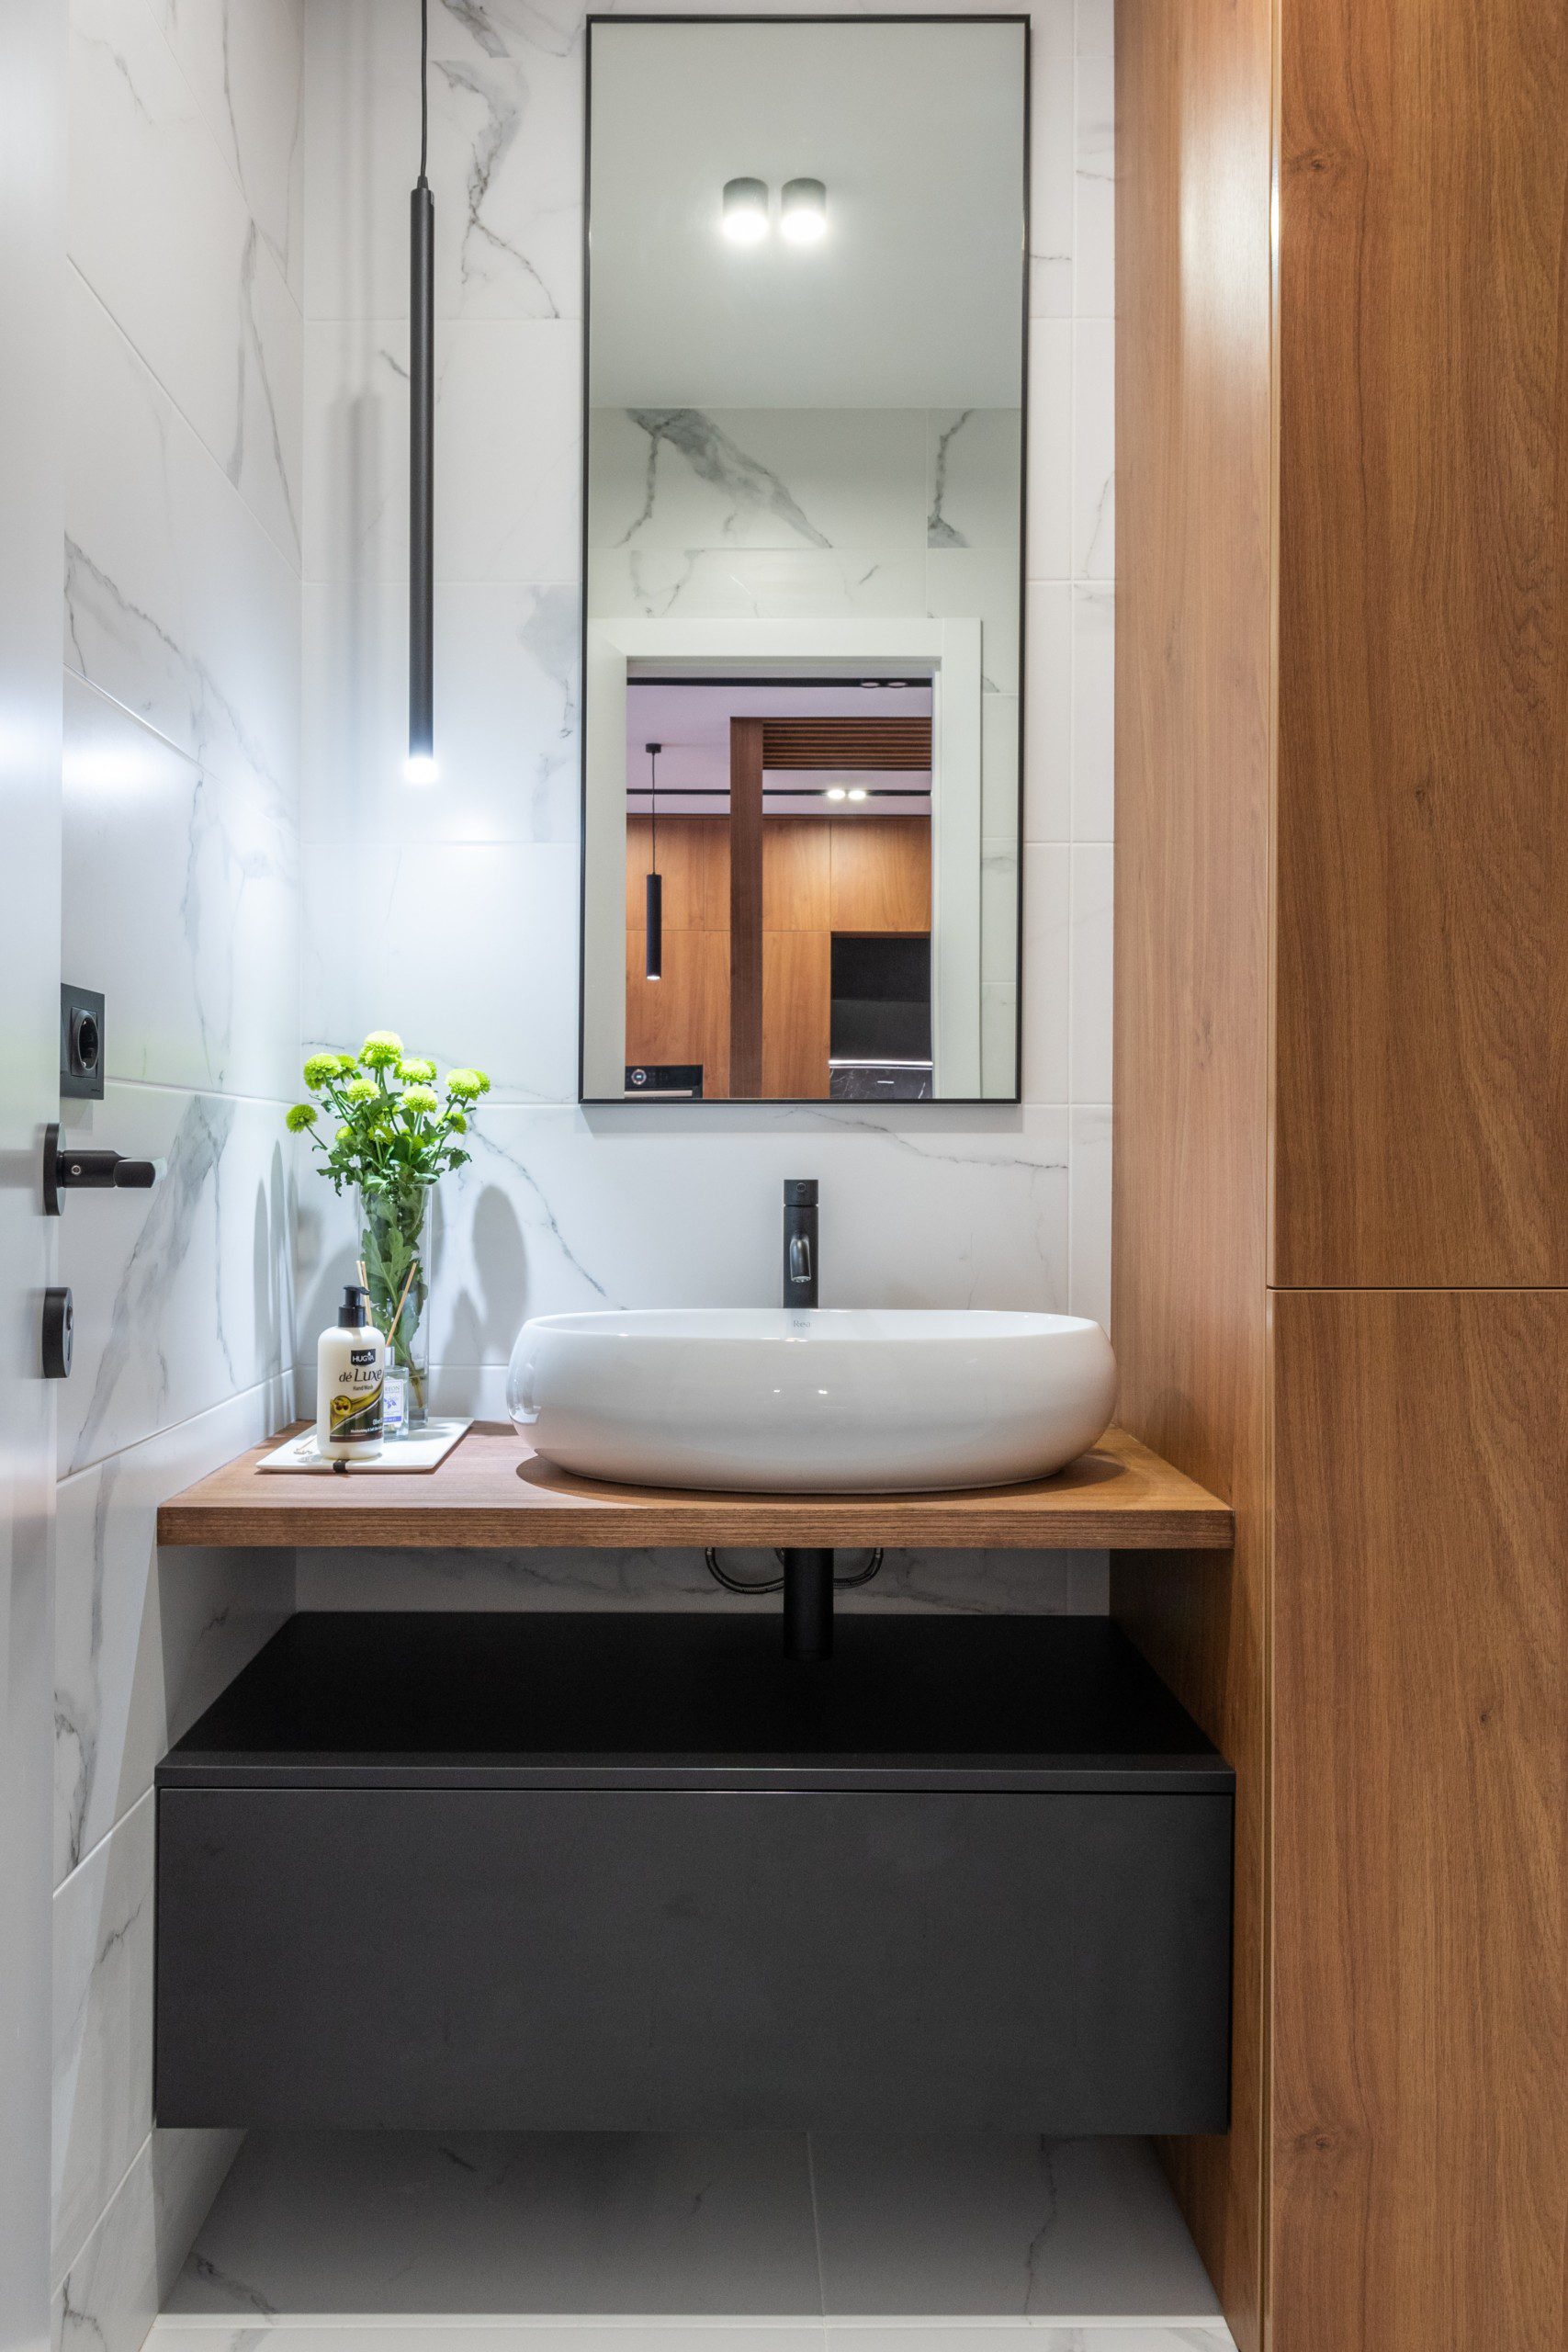 A foto mostra um banheiro pequeno decorado com espelho grande em formato retangular com moldura preta.